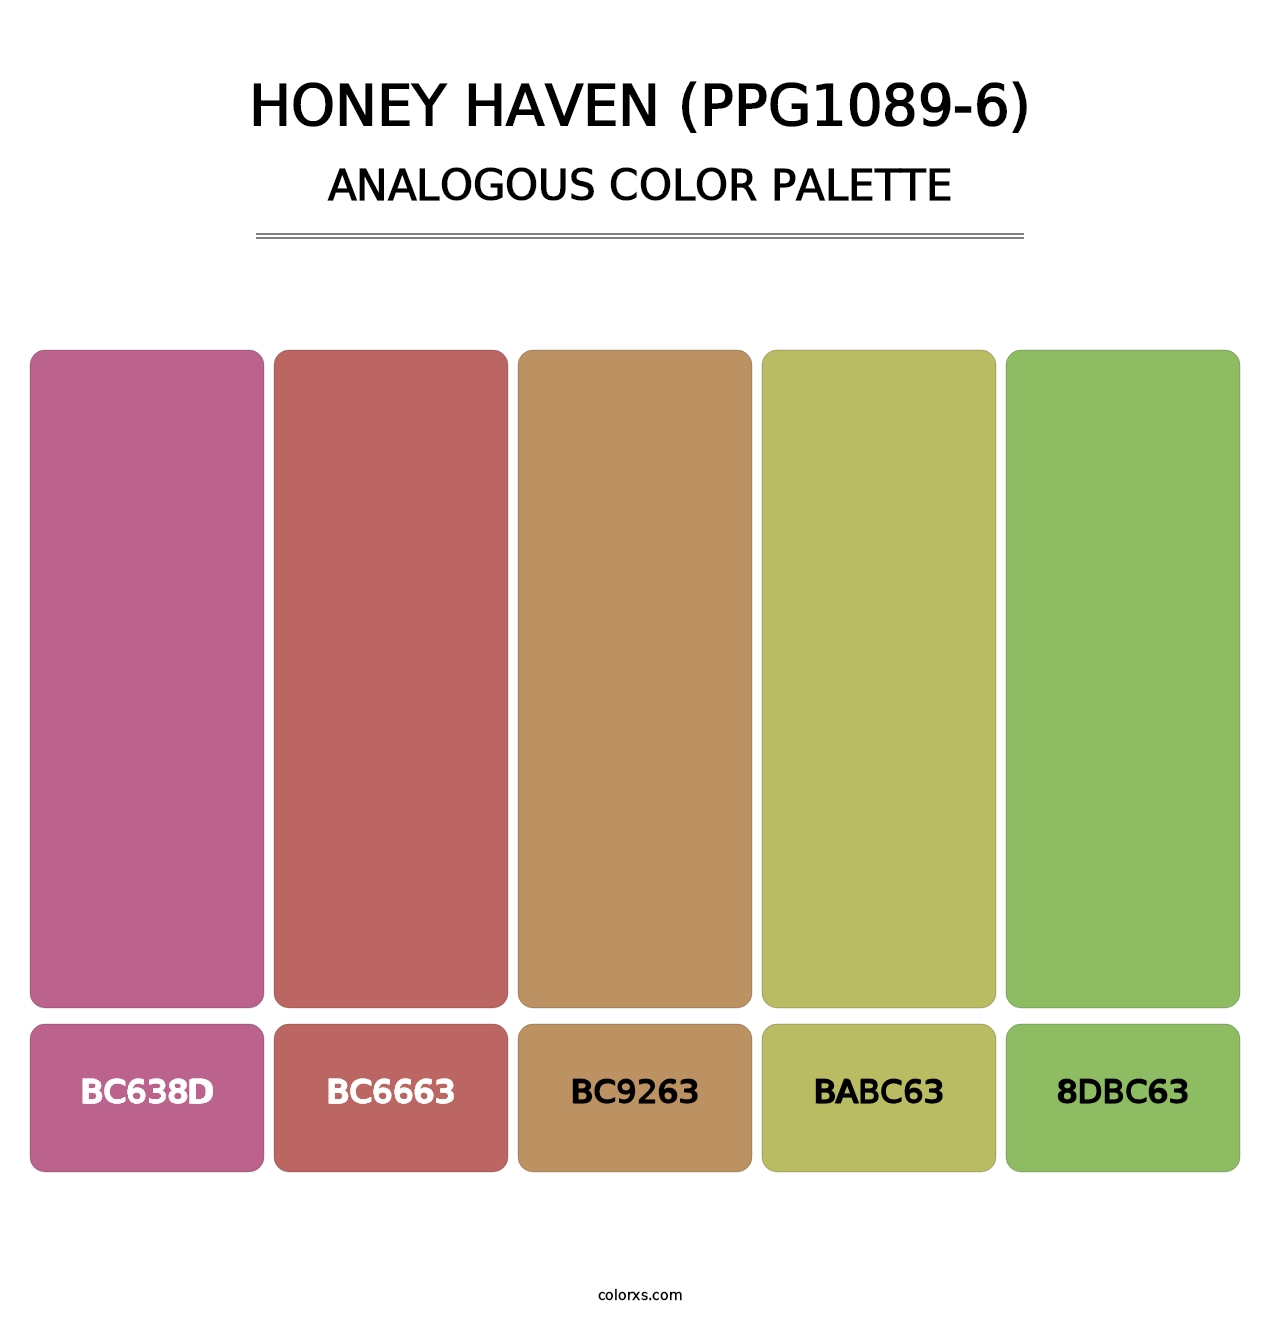 Honey Haven (PPG1089-6) - Analogous Color Palette